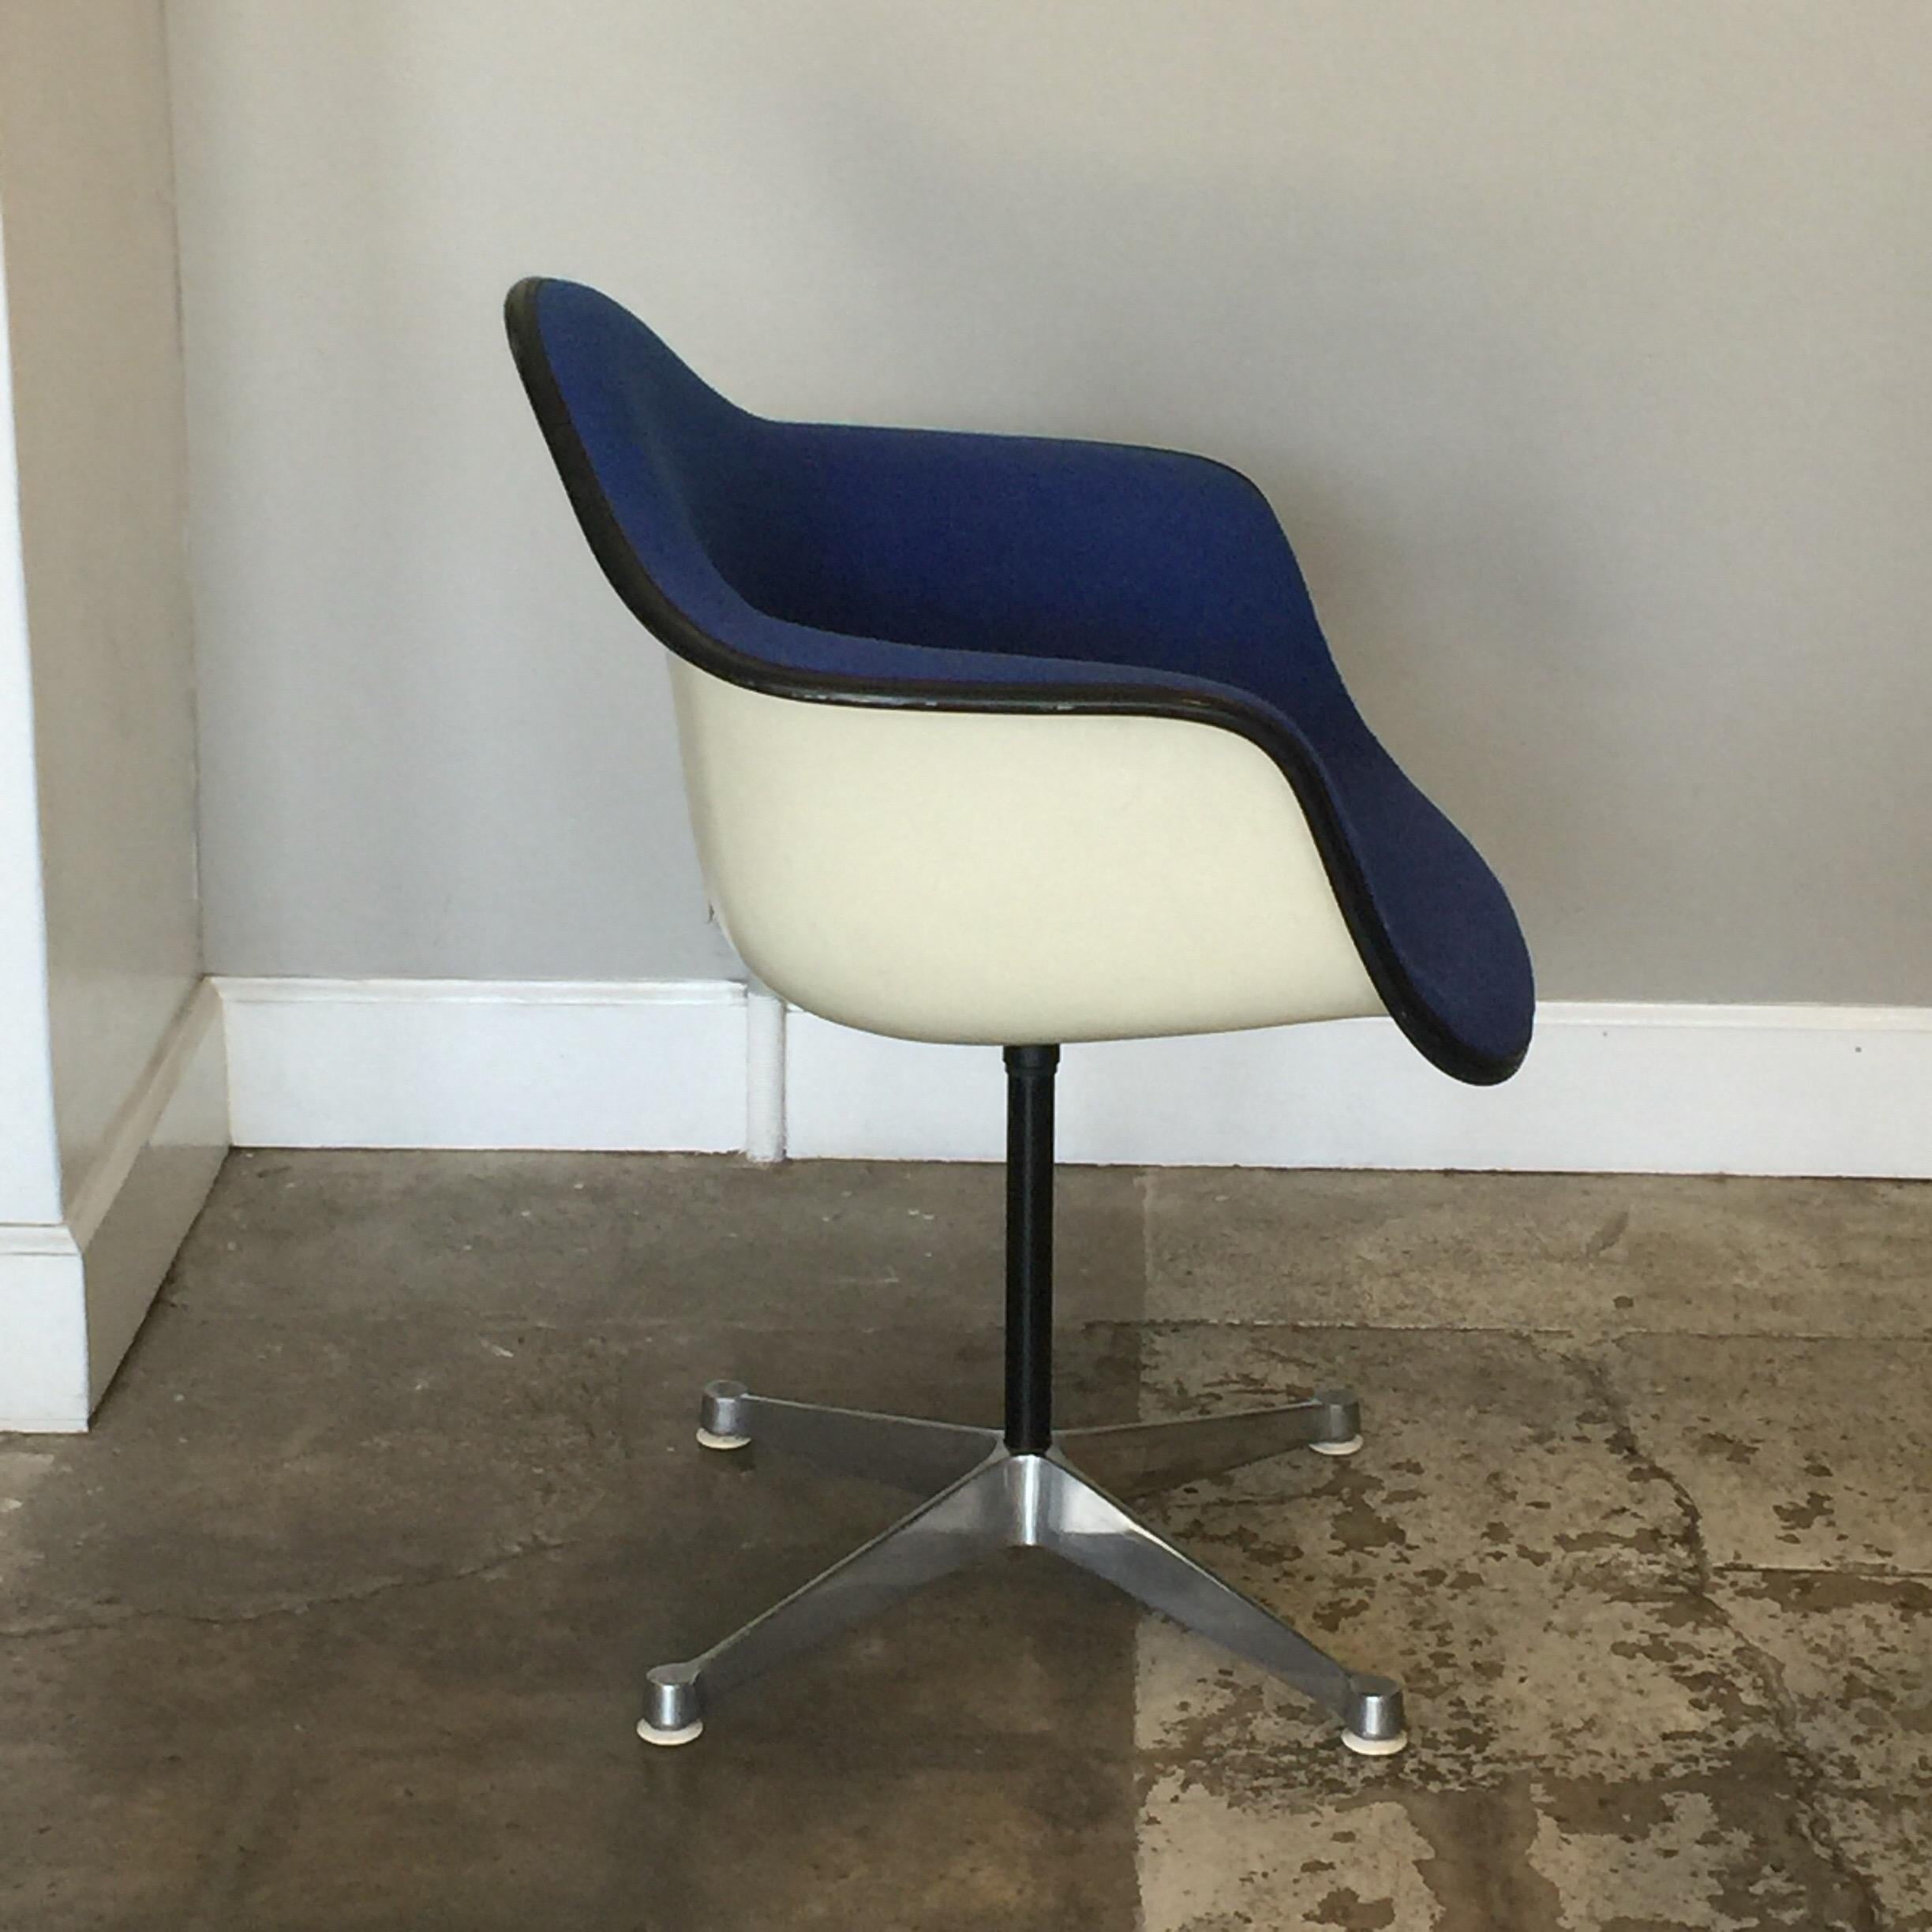 Impeccable fauteuil pivotant moulé de Charles et Ray Eames pour Herman Miller.

Modèle de base de l'entrepreneur.